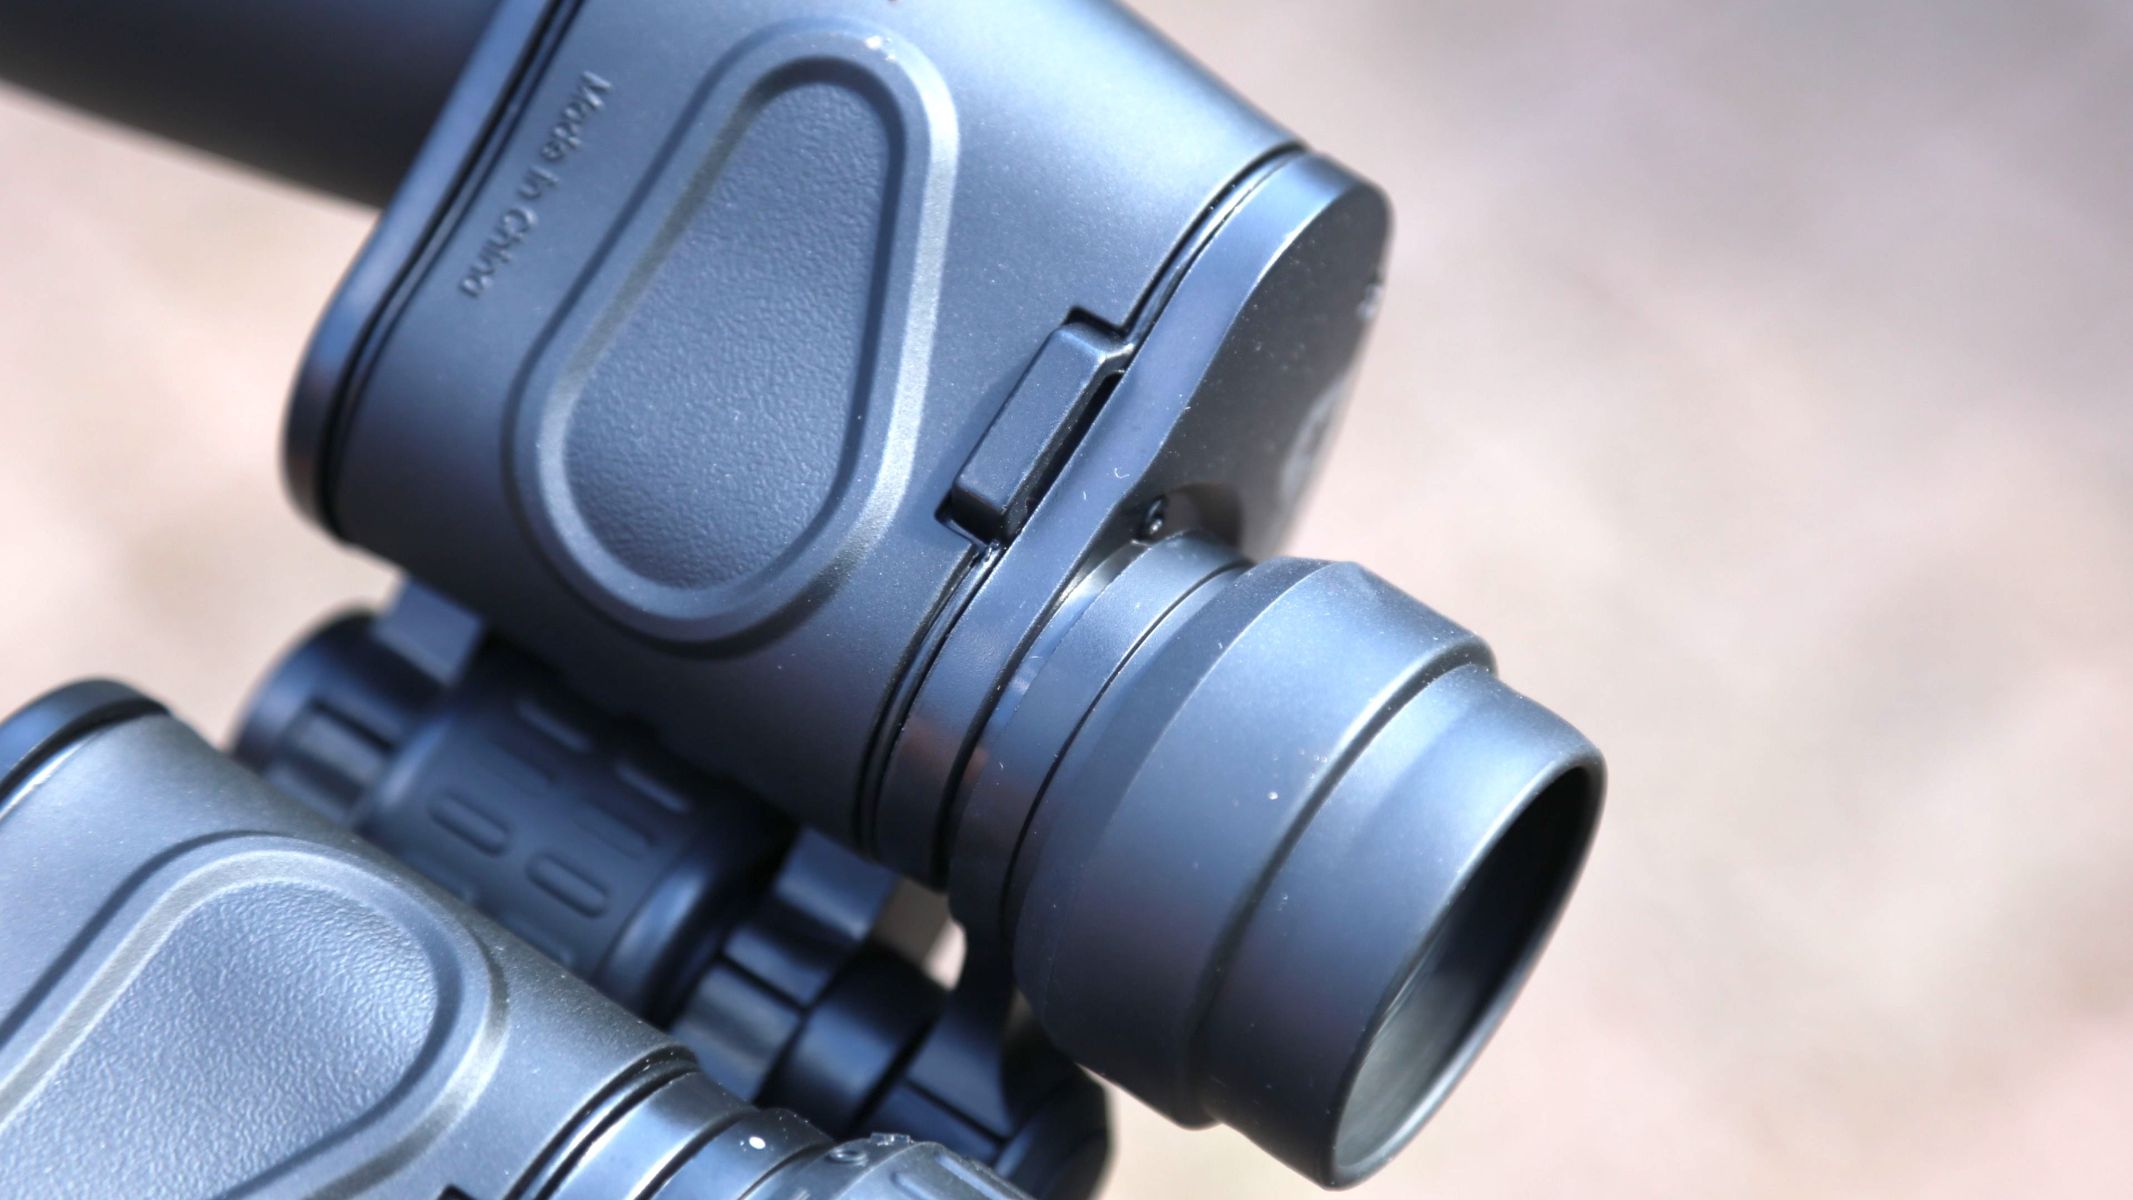 Underside view of the EclipSmart 12x50 binoculars